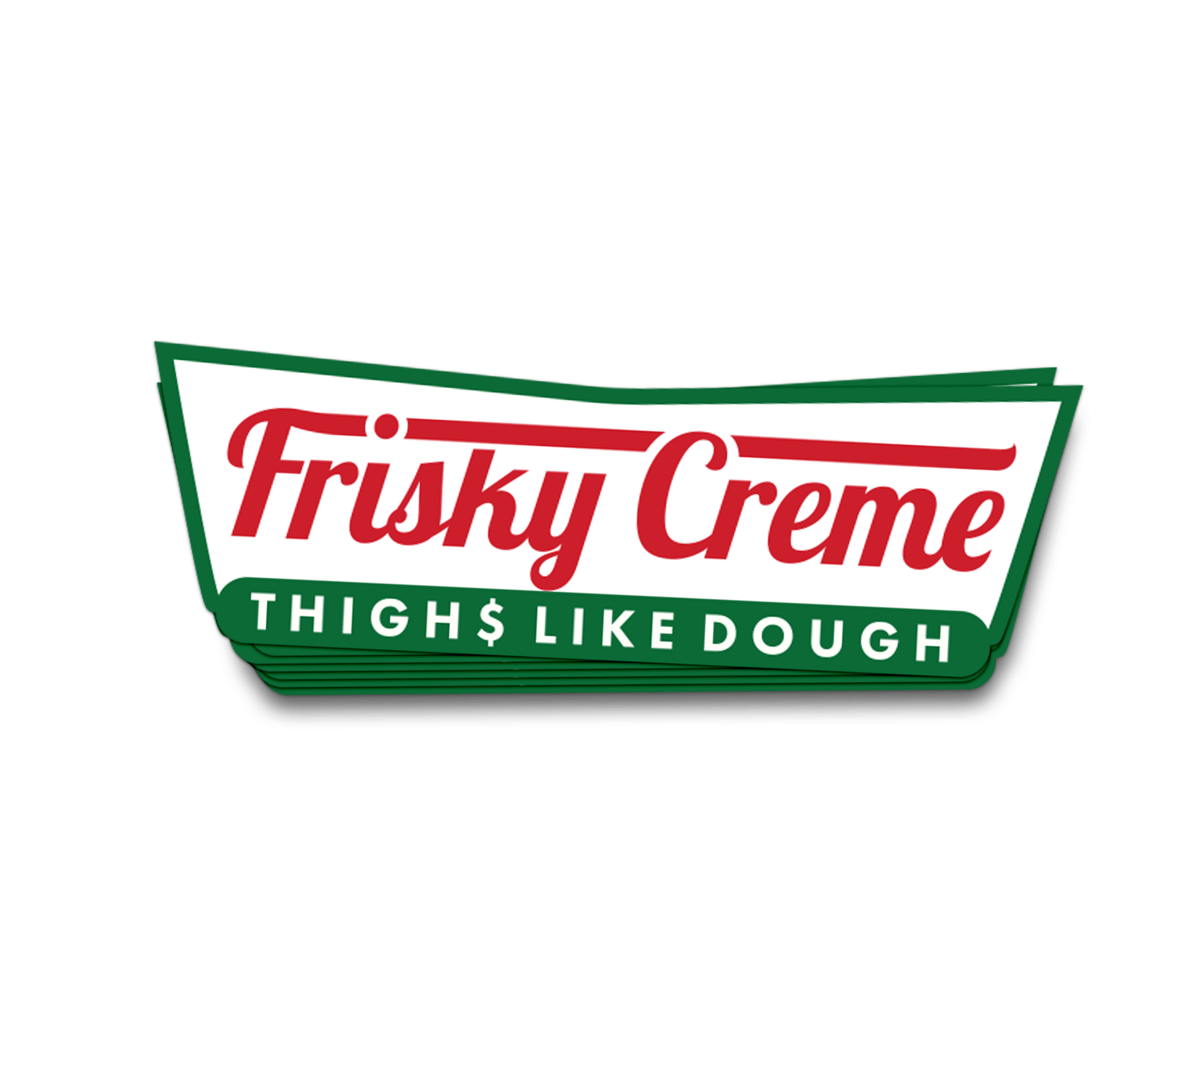 Image of Thigh$ like dough